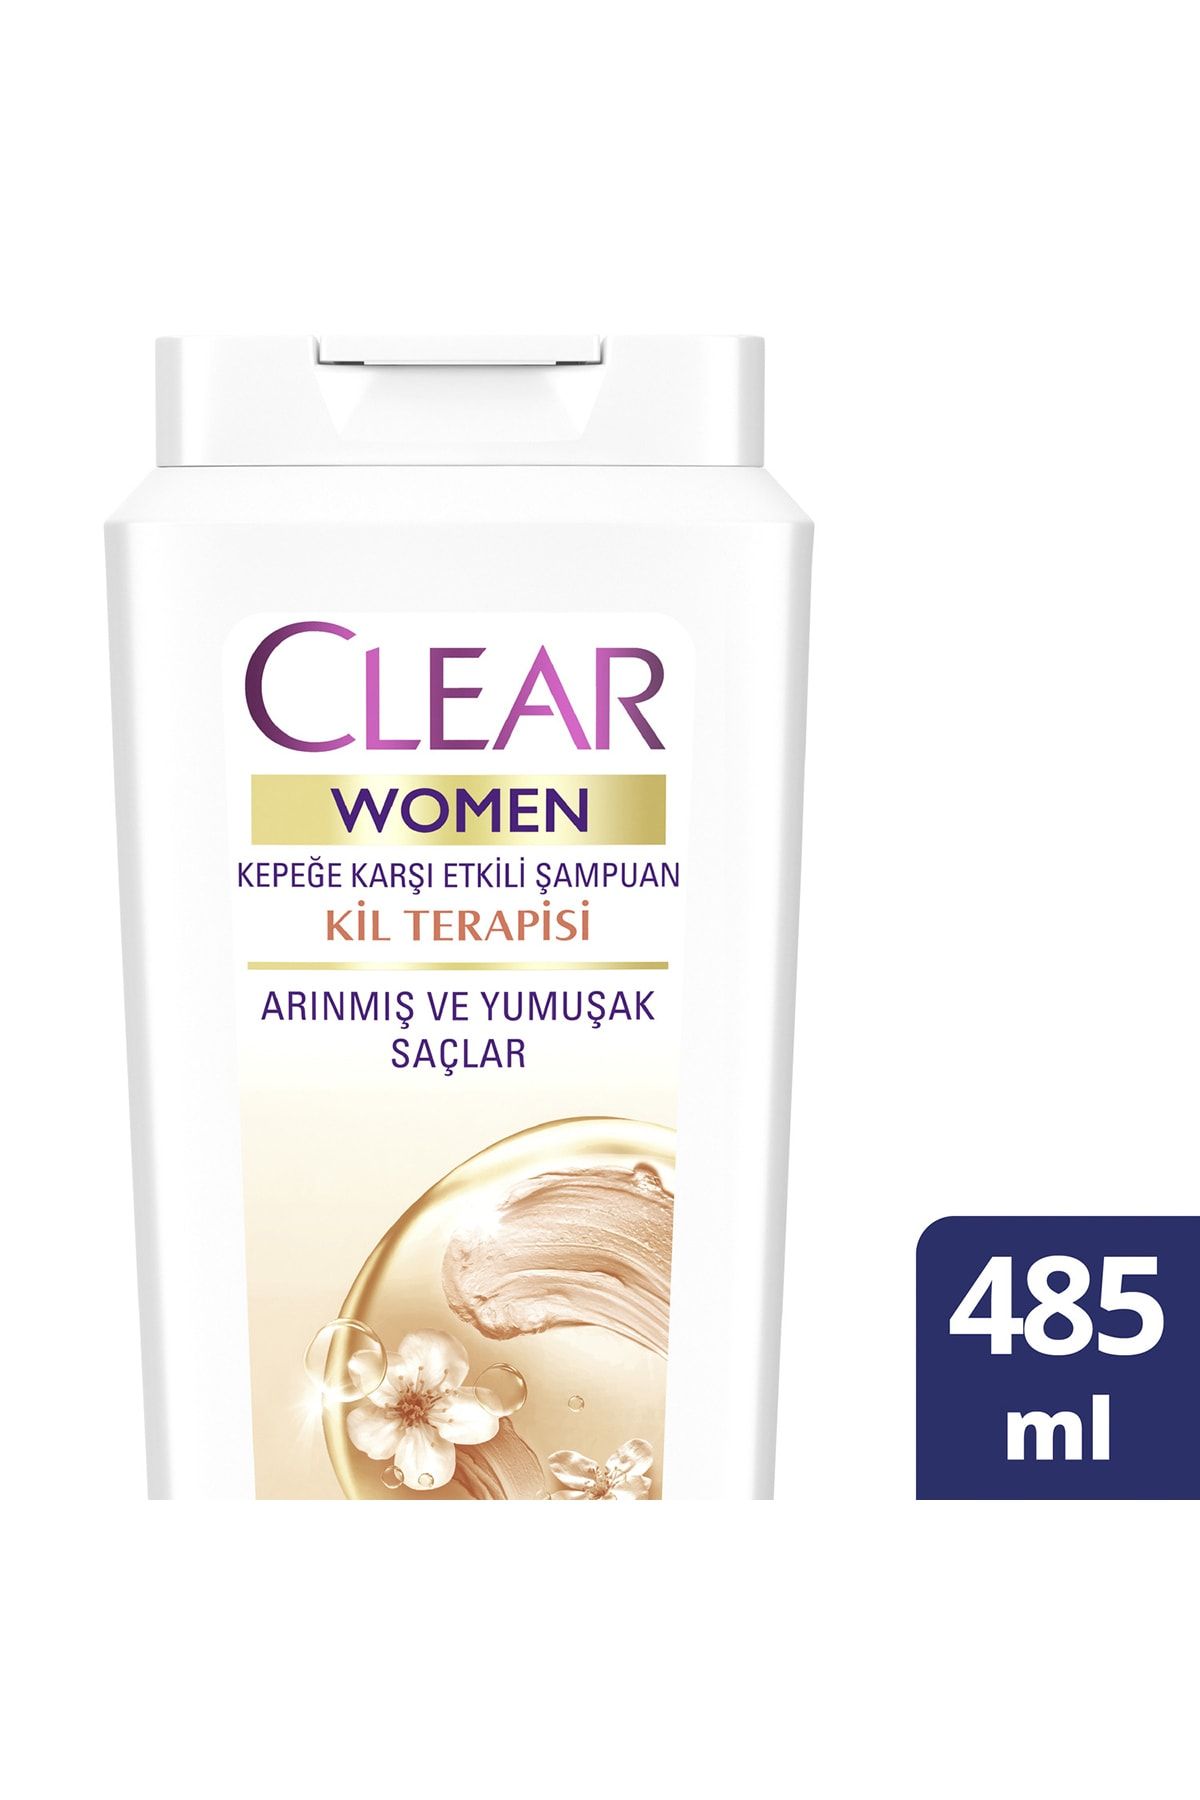 Clear Women Kepeğe Karşı Etkili Şampuan Kil Terapisi Arınmış ve Yumuşak Saçlar 485 ml